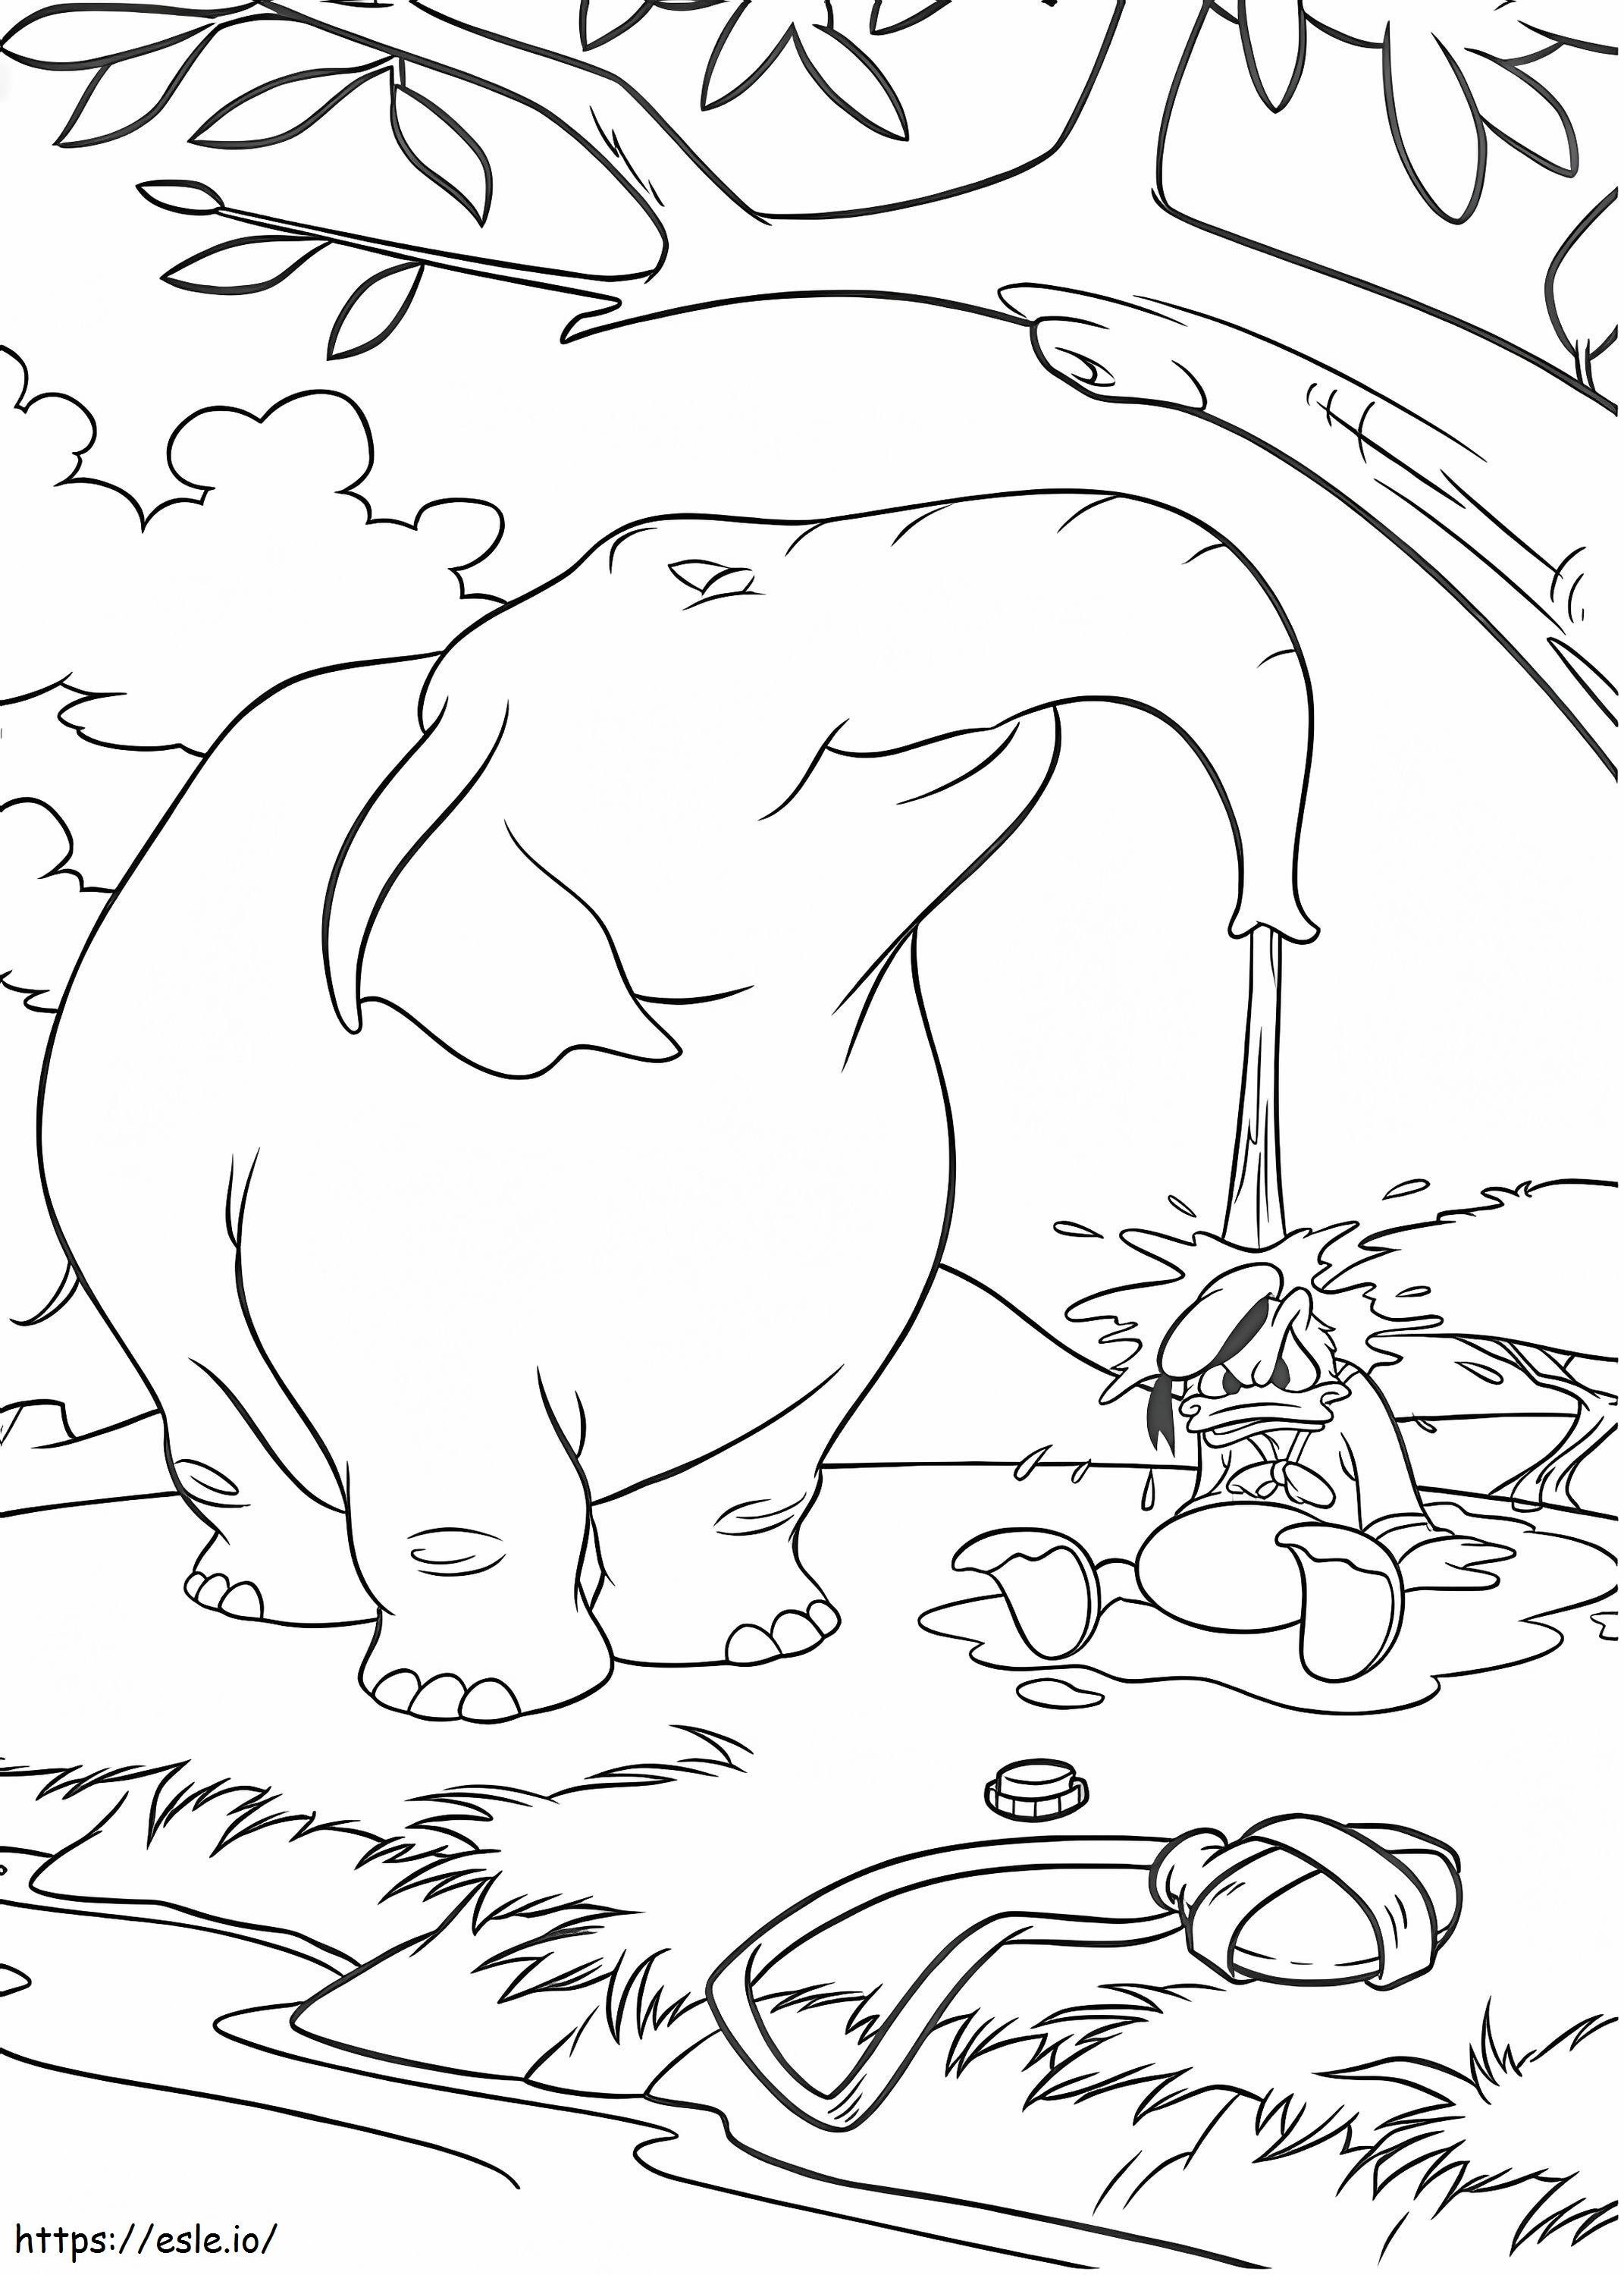 1534757782 Donald e elefante A4 para colorir